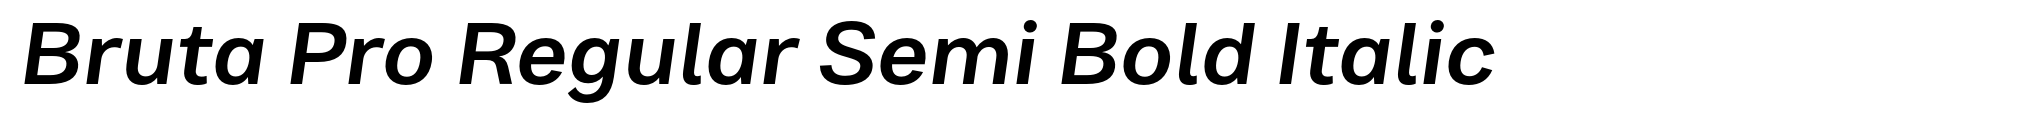 Bruta Pro Regular Semi Bold Italic image